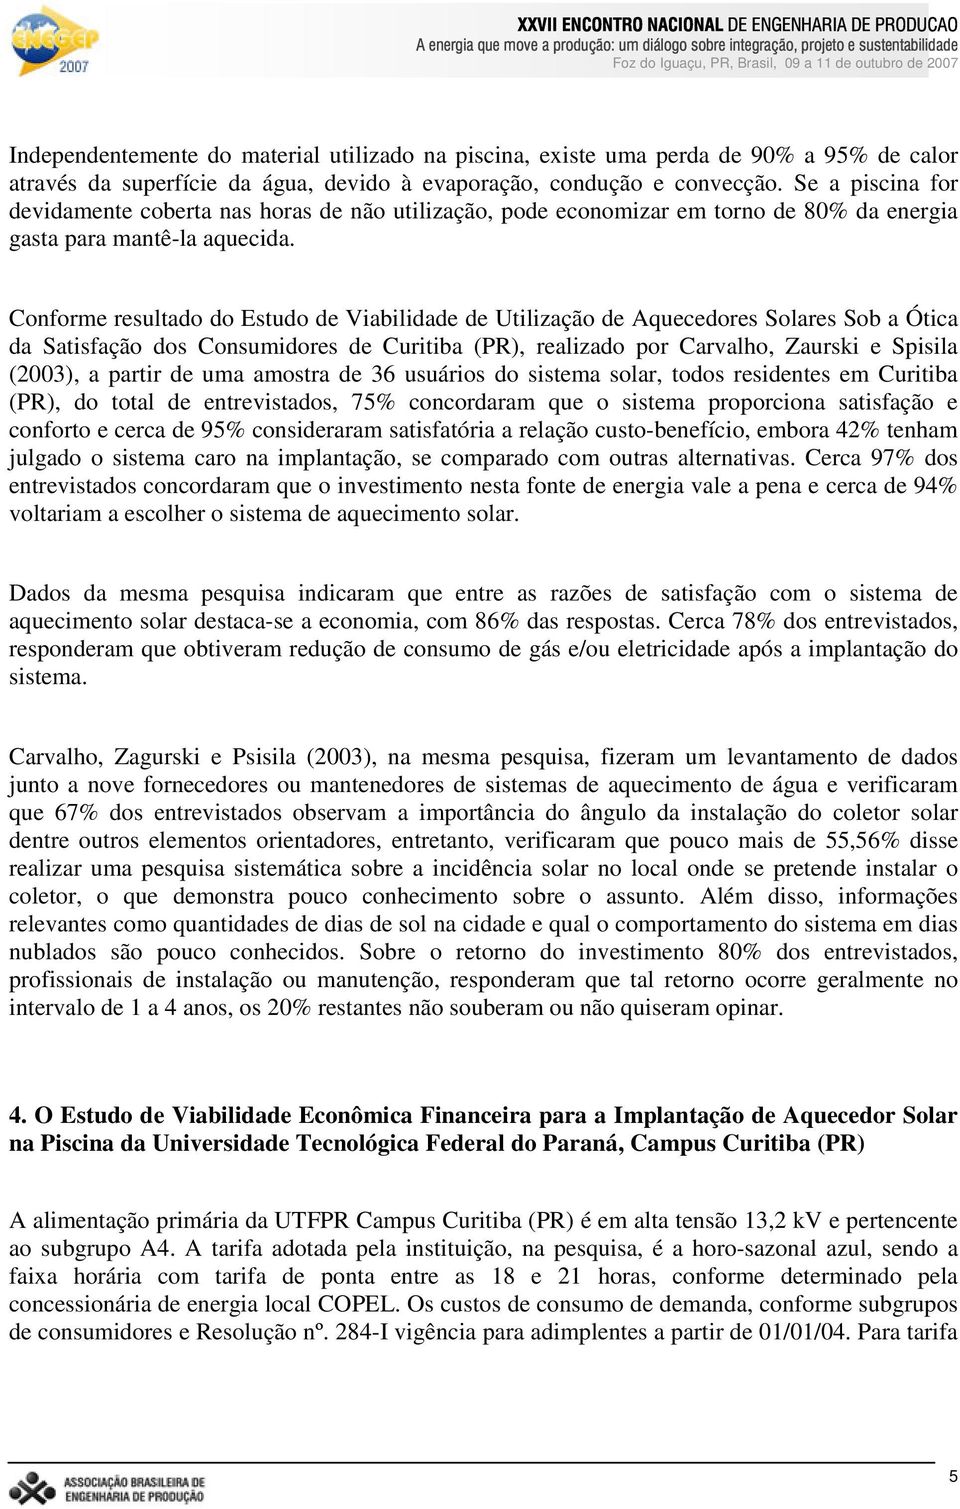 Conforme resultado do Estudo de Viabilidade de Utilização de Aquecedores Solares Sob a Ótica da Satisfação dos Consumidores de Curitiba (PR), realizado por Carvalho, Zaurski e Spisila (2003), a